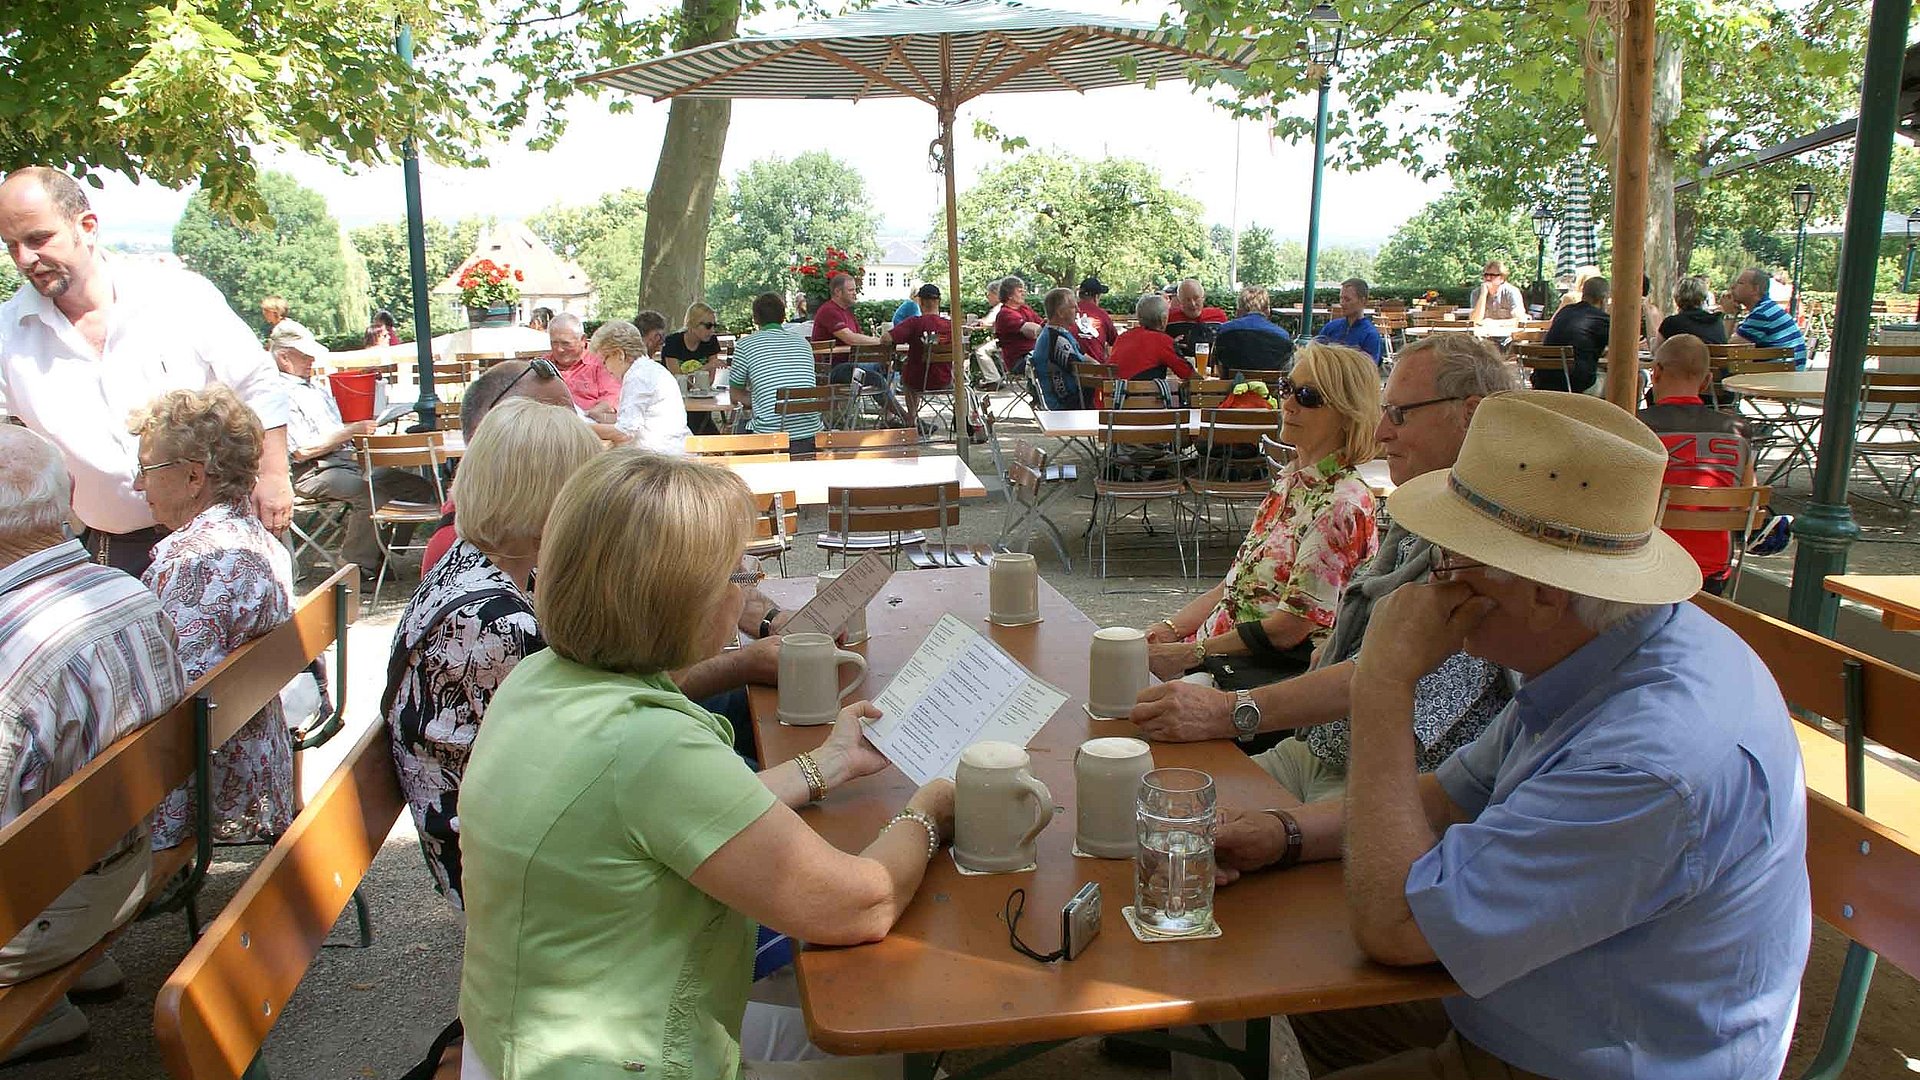 Biergärten am Chiemsee - Reisegruppe am Tisch im Biergarten